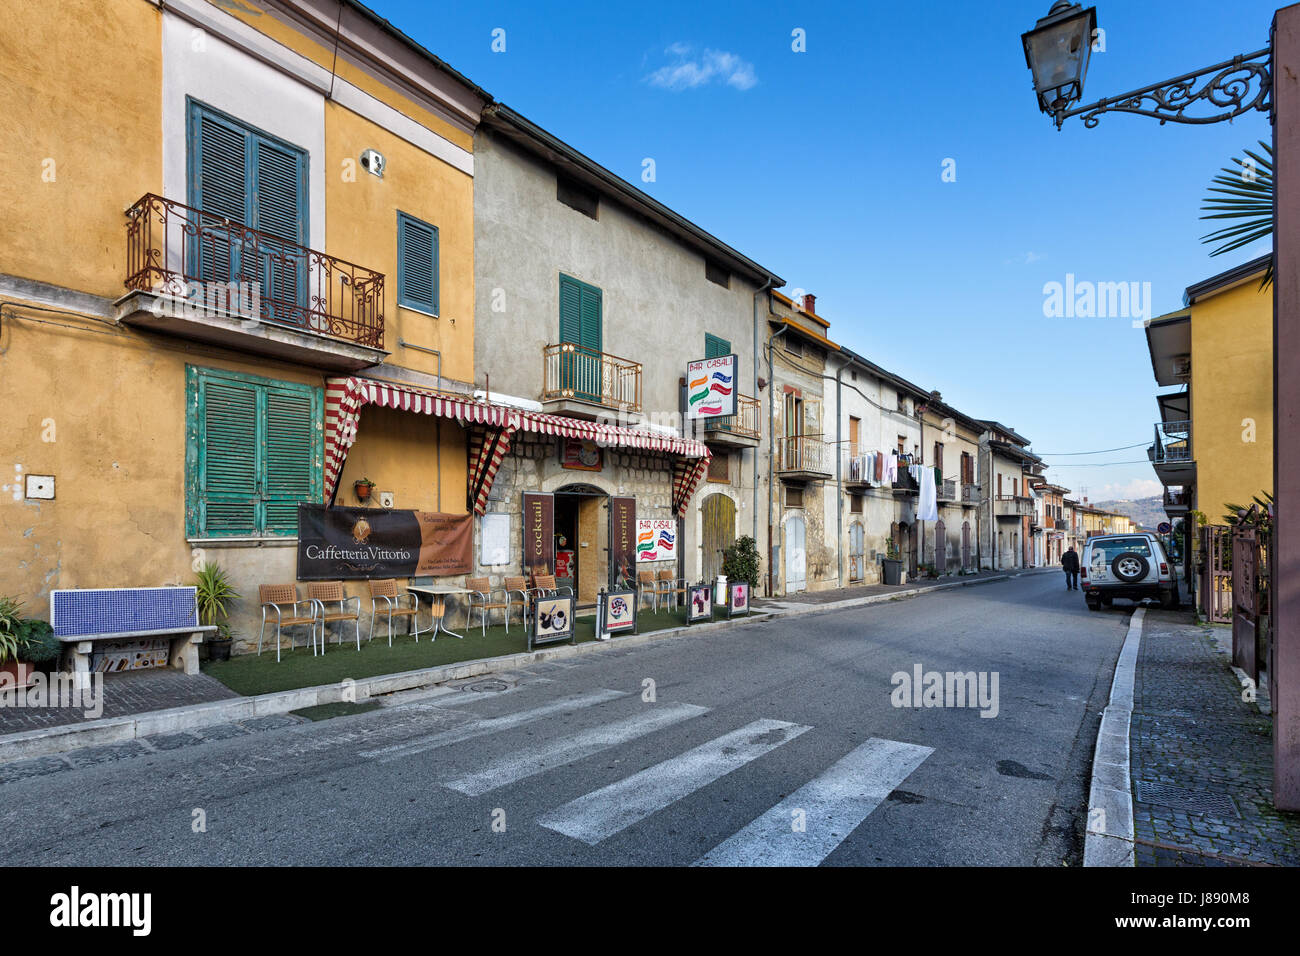 San Martino Valle Caudina (Avellino, Italy) - The city centre Stock Photo